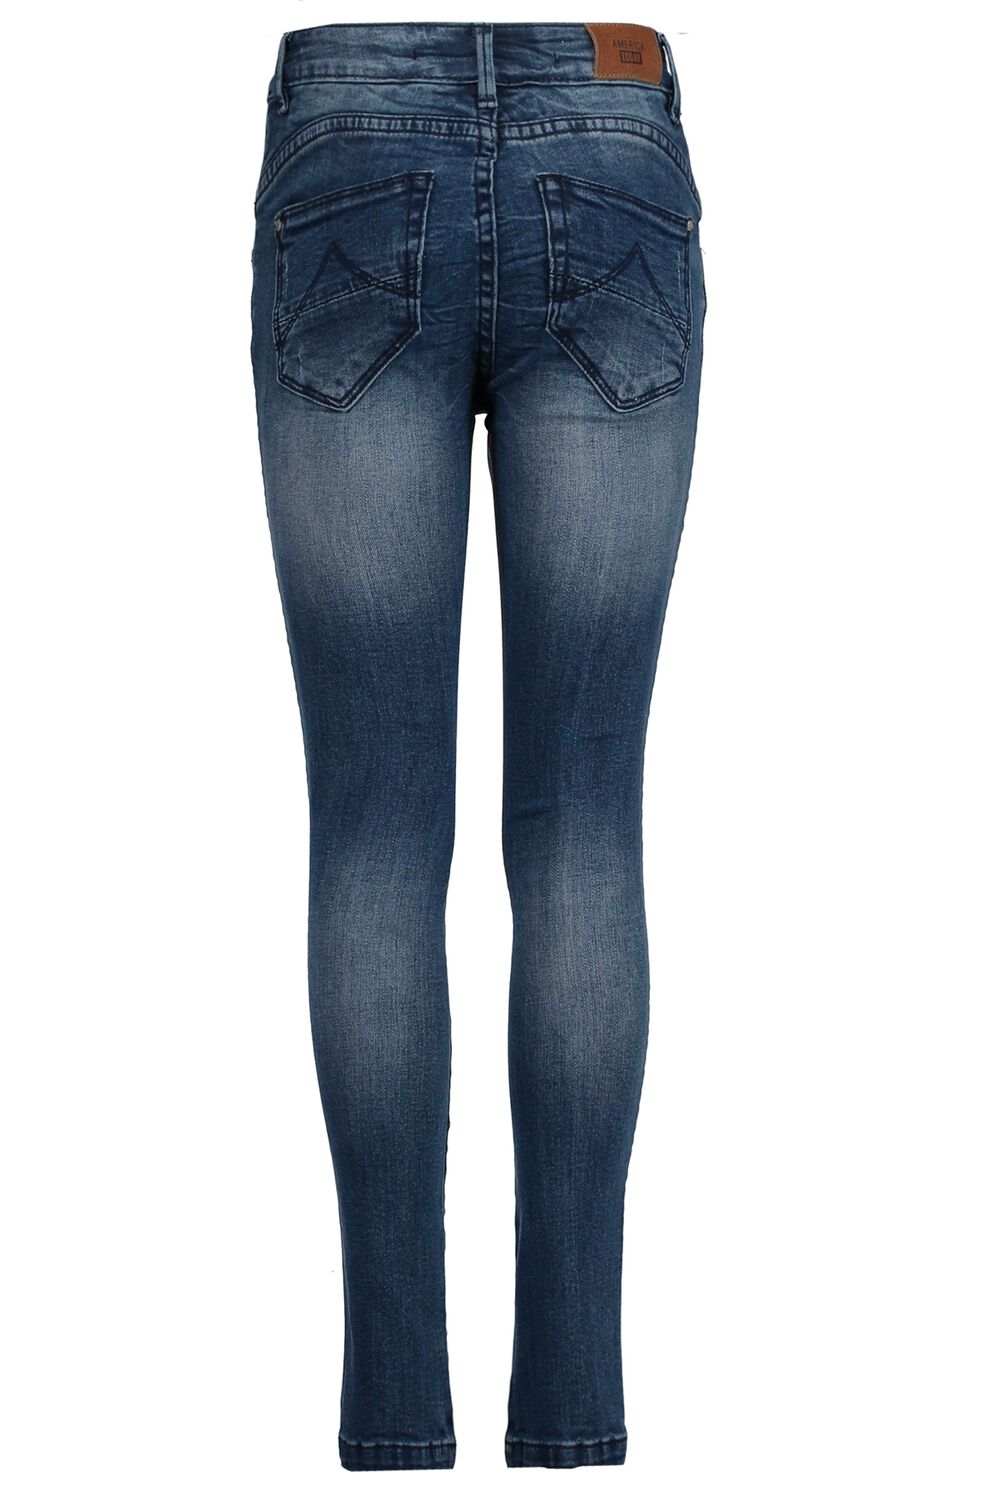 America Today Meisjes Skinny Jeans Blauw